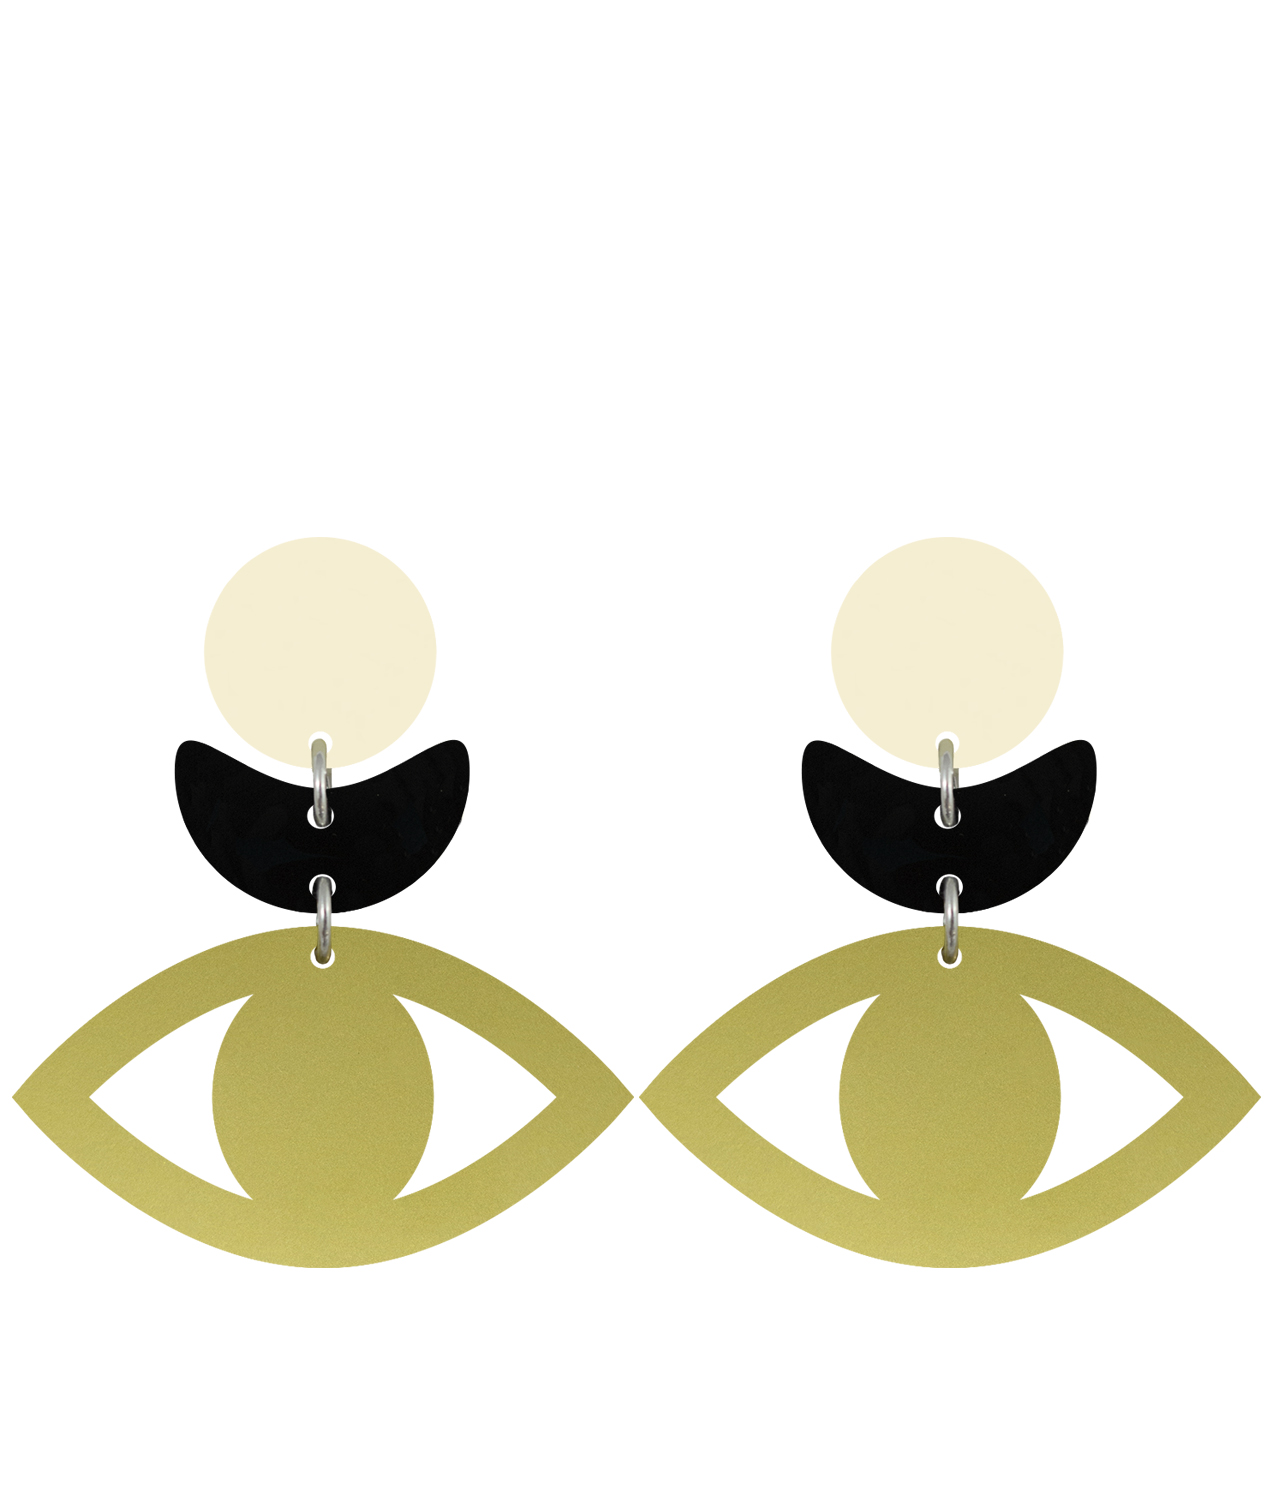 orella-jewelry-olimpia-earrings-golden